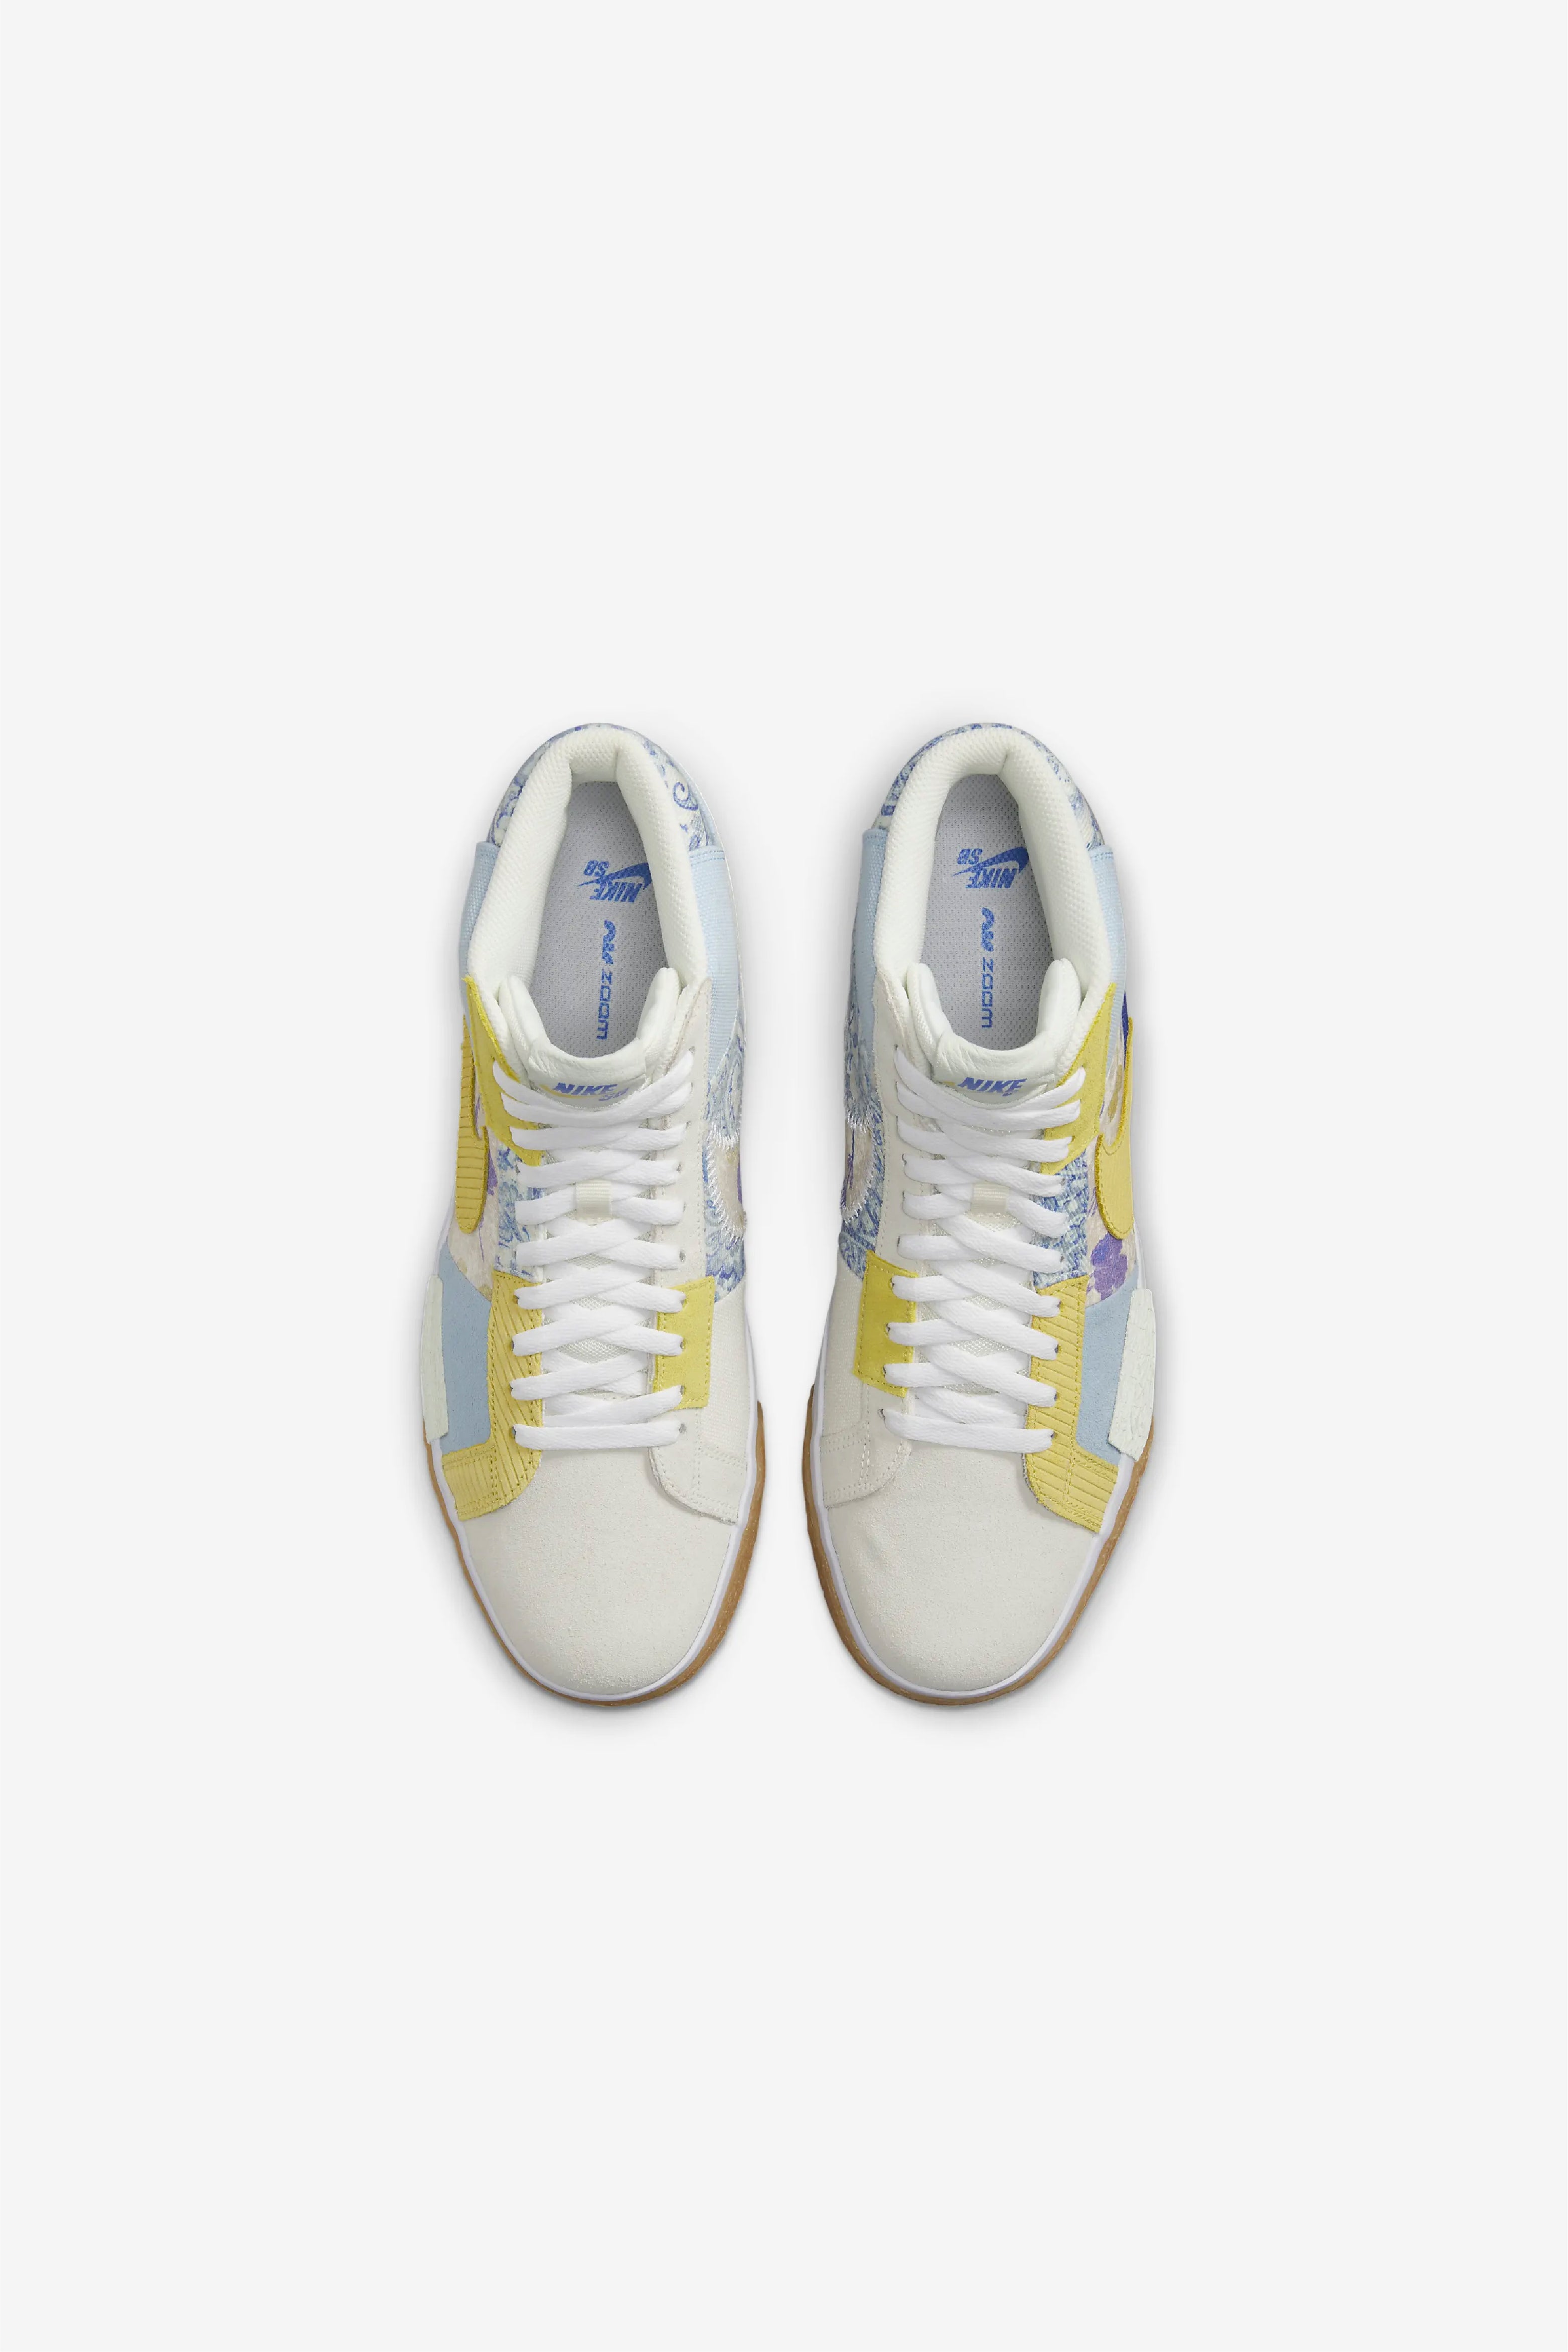 Selectshop FRAME - NIKE SB Nike SB Zoom Blazer Mid Premium “Paisley” Footwear Dubai